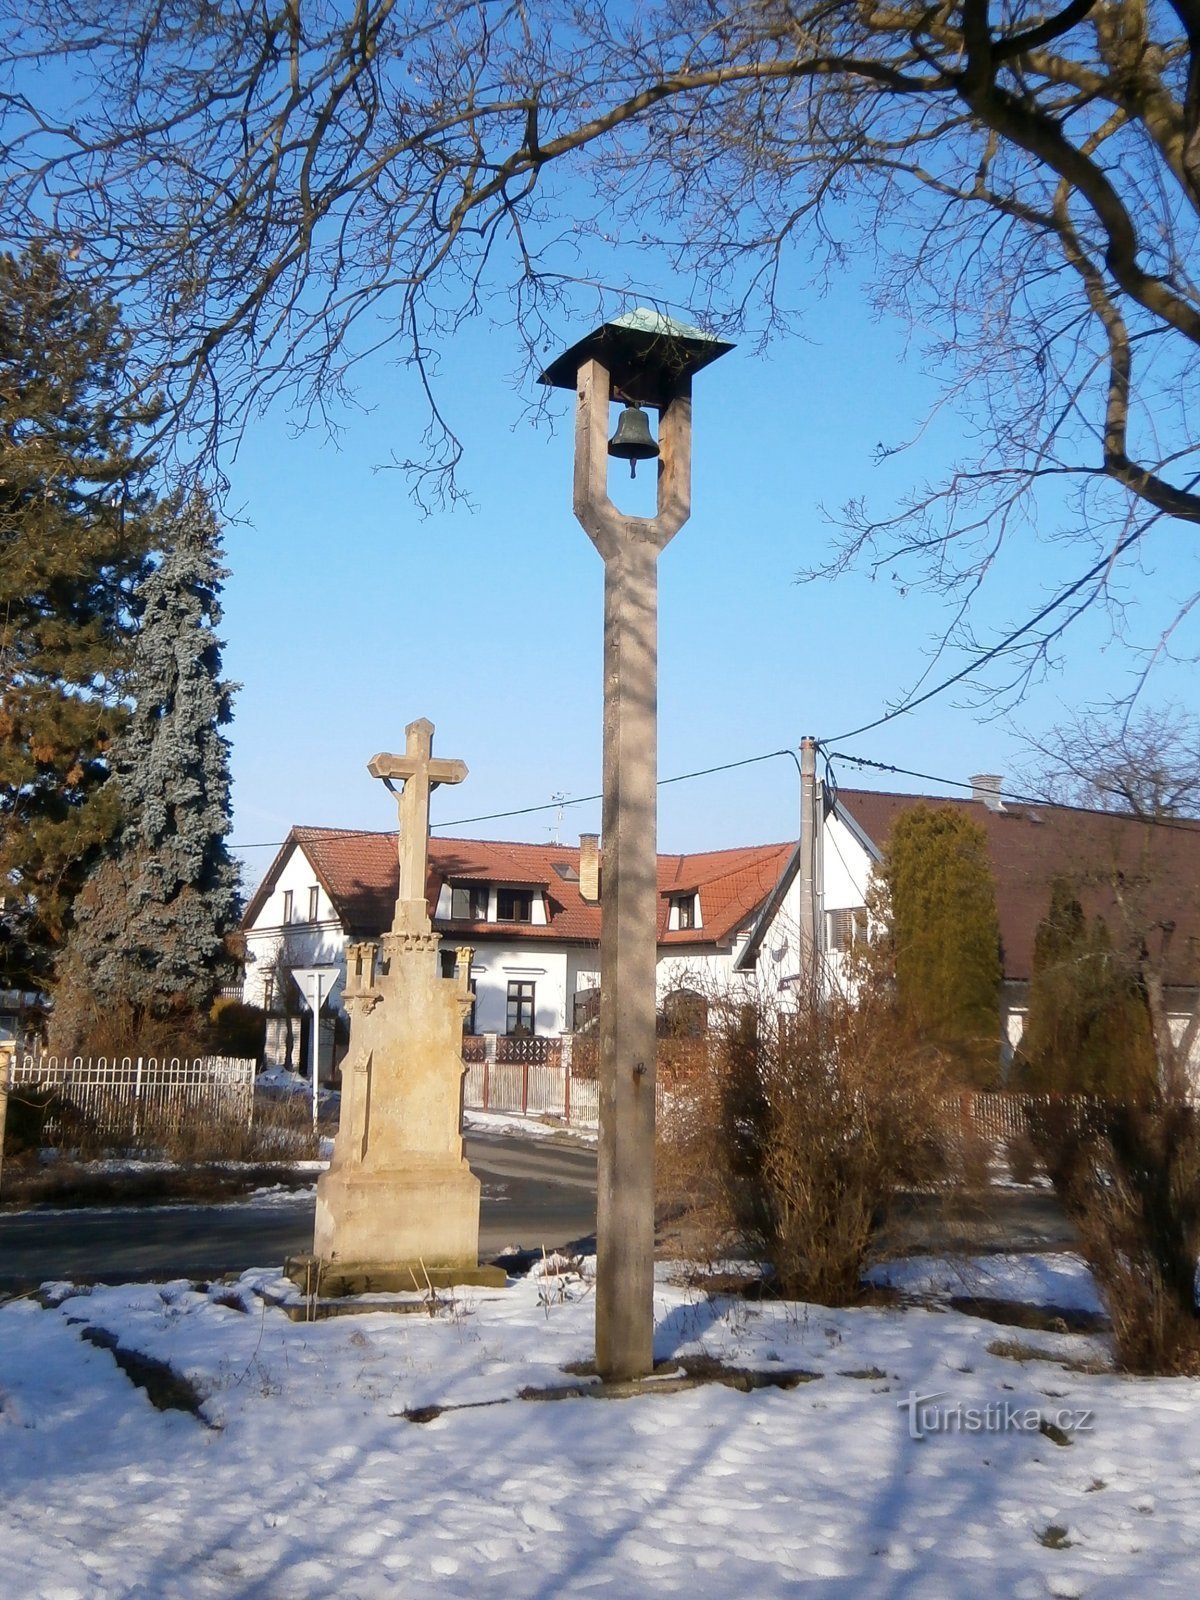 Clocher et croix de Roudnička (Hradec Králové, 14.2.2017 avril XNUMX)